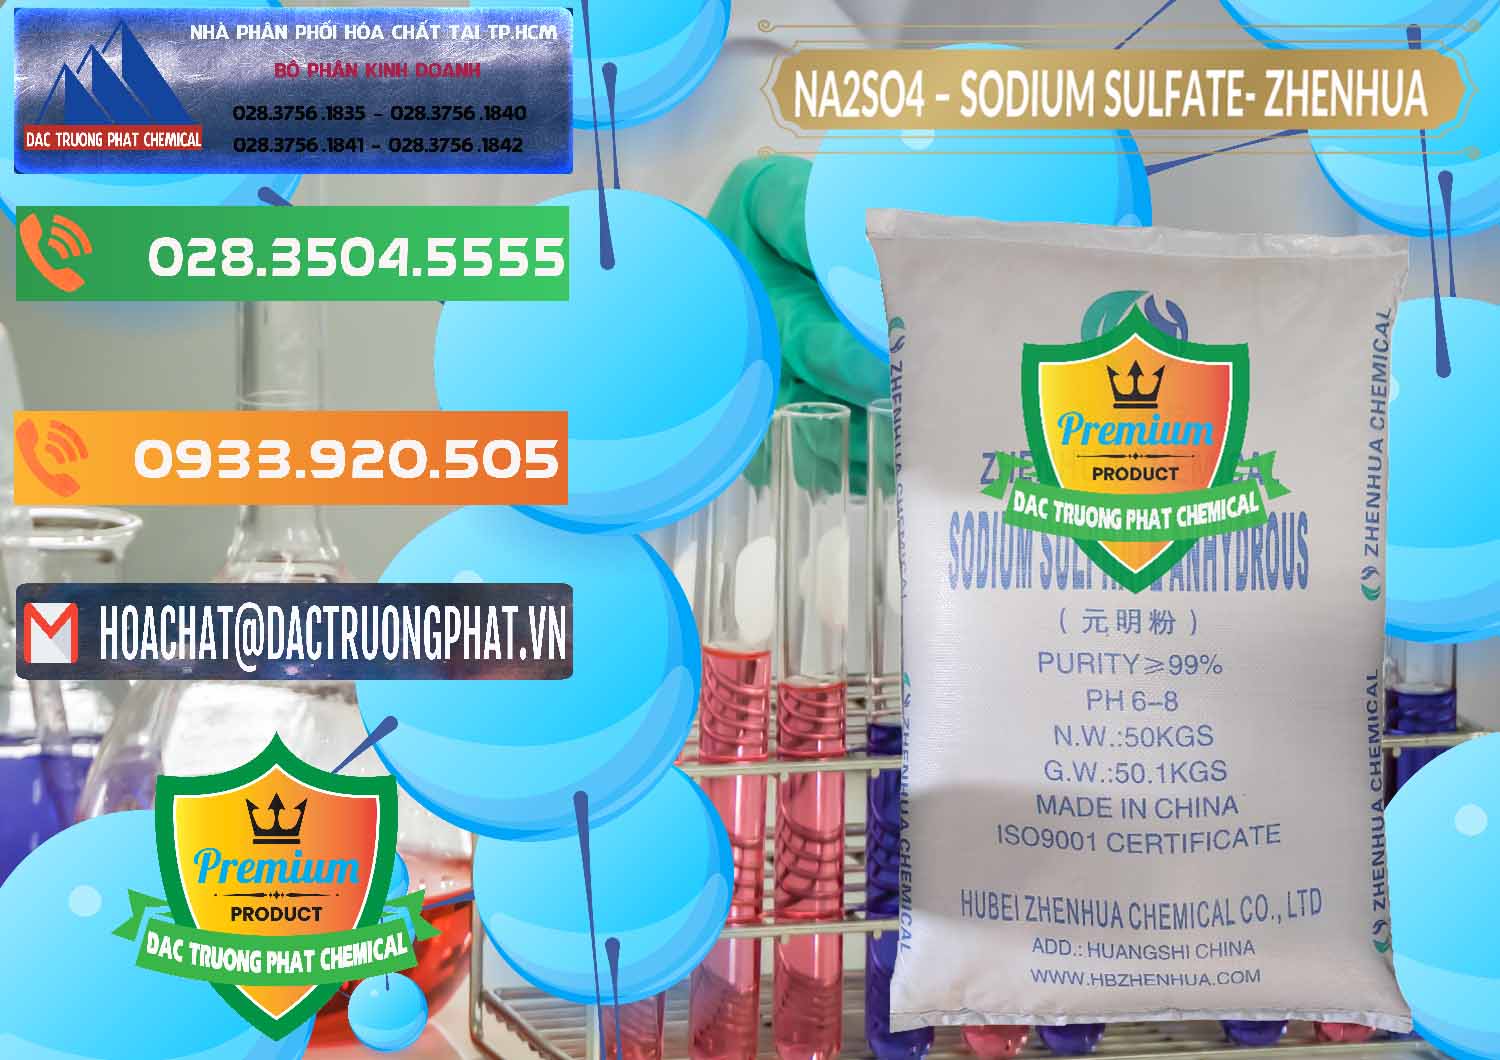 Đơn vị chuyên bán _ phân phối Sodium Sulphate - Muối Sunfat Na2SO4 Zhenhua Trung Quốc China - 0101 - Cty phân phối & cung cấp hóa chất tại TP.HCM - hoachatxulynuoc.com.vn